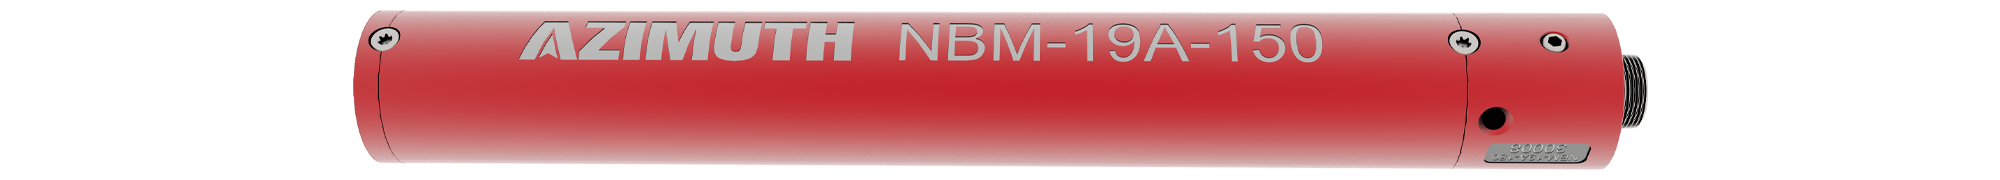 NBM-19A